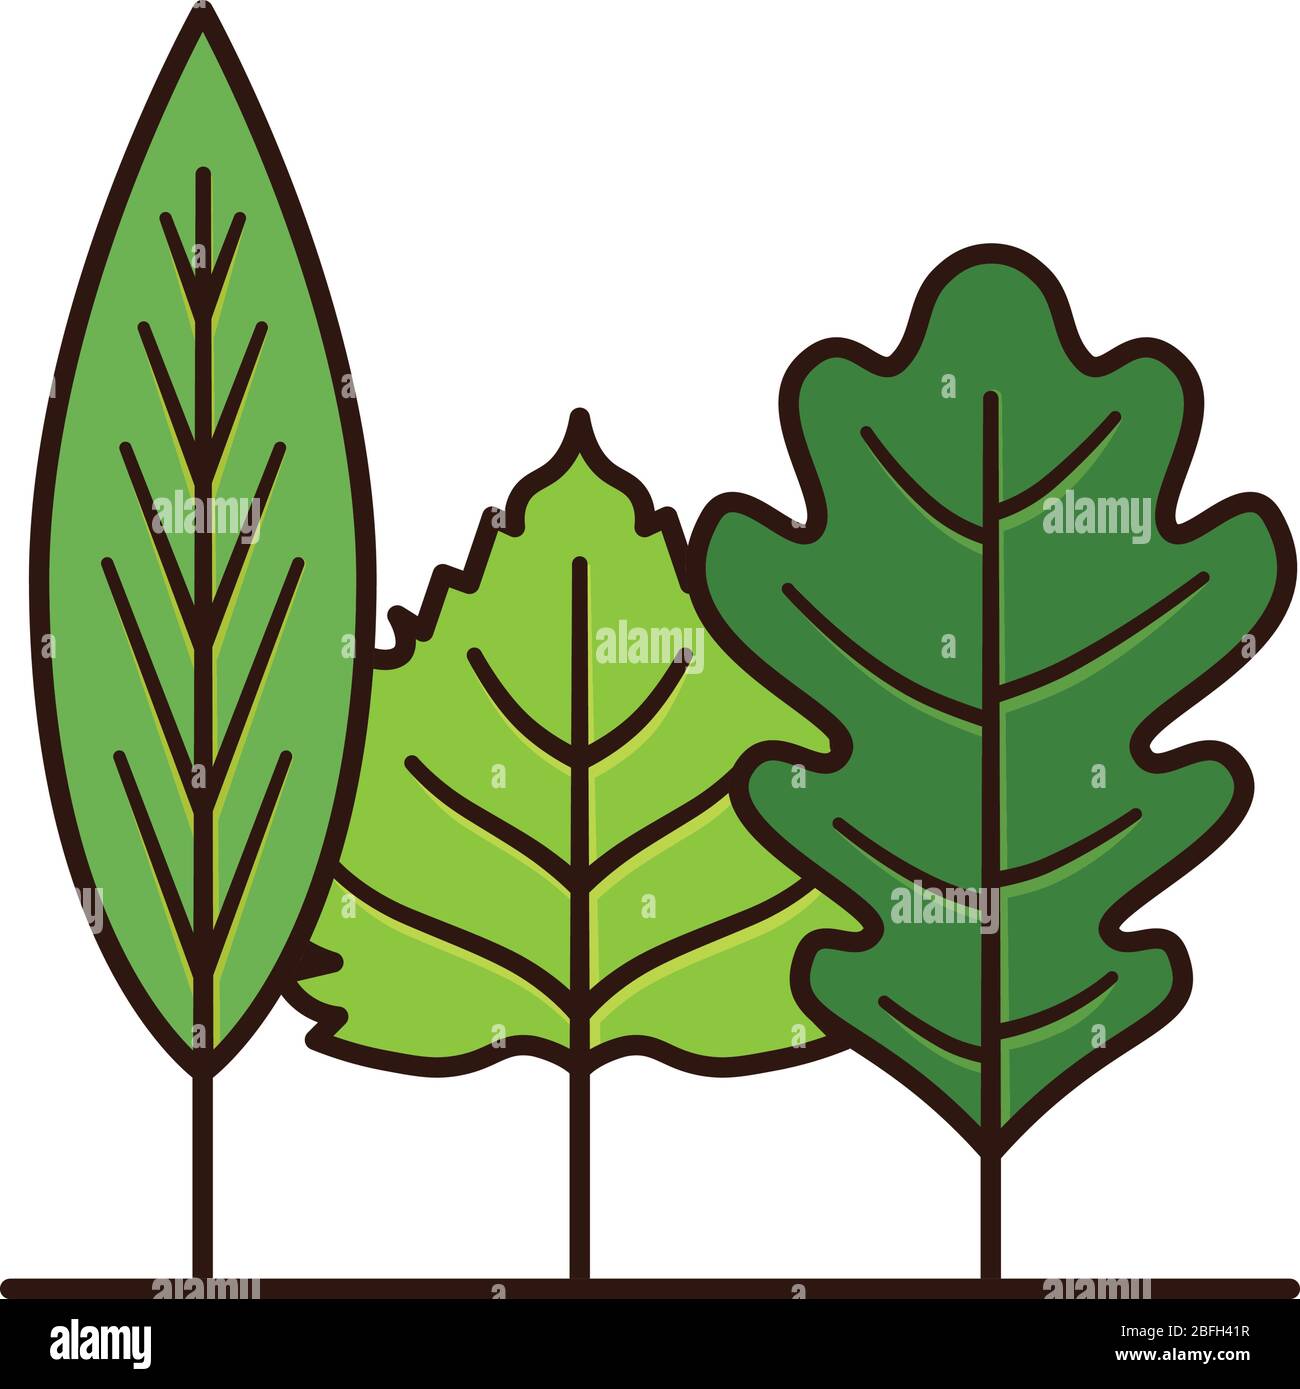 Variété de feuilles ressemblant à une petite forêt isolée illustration vectorielle pour Arbor Day le 24 avril Illustration de Vecteur